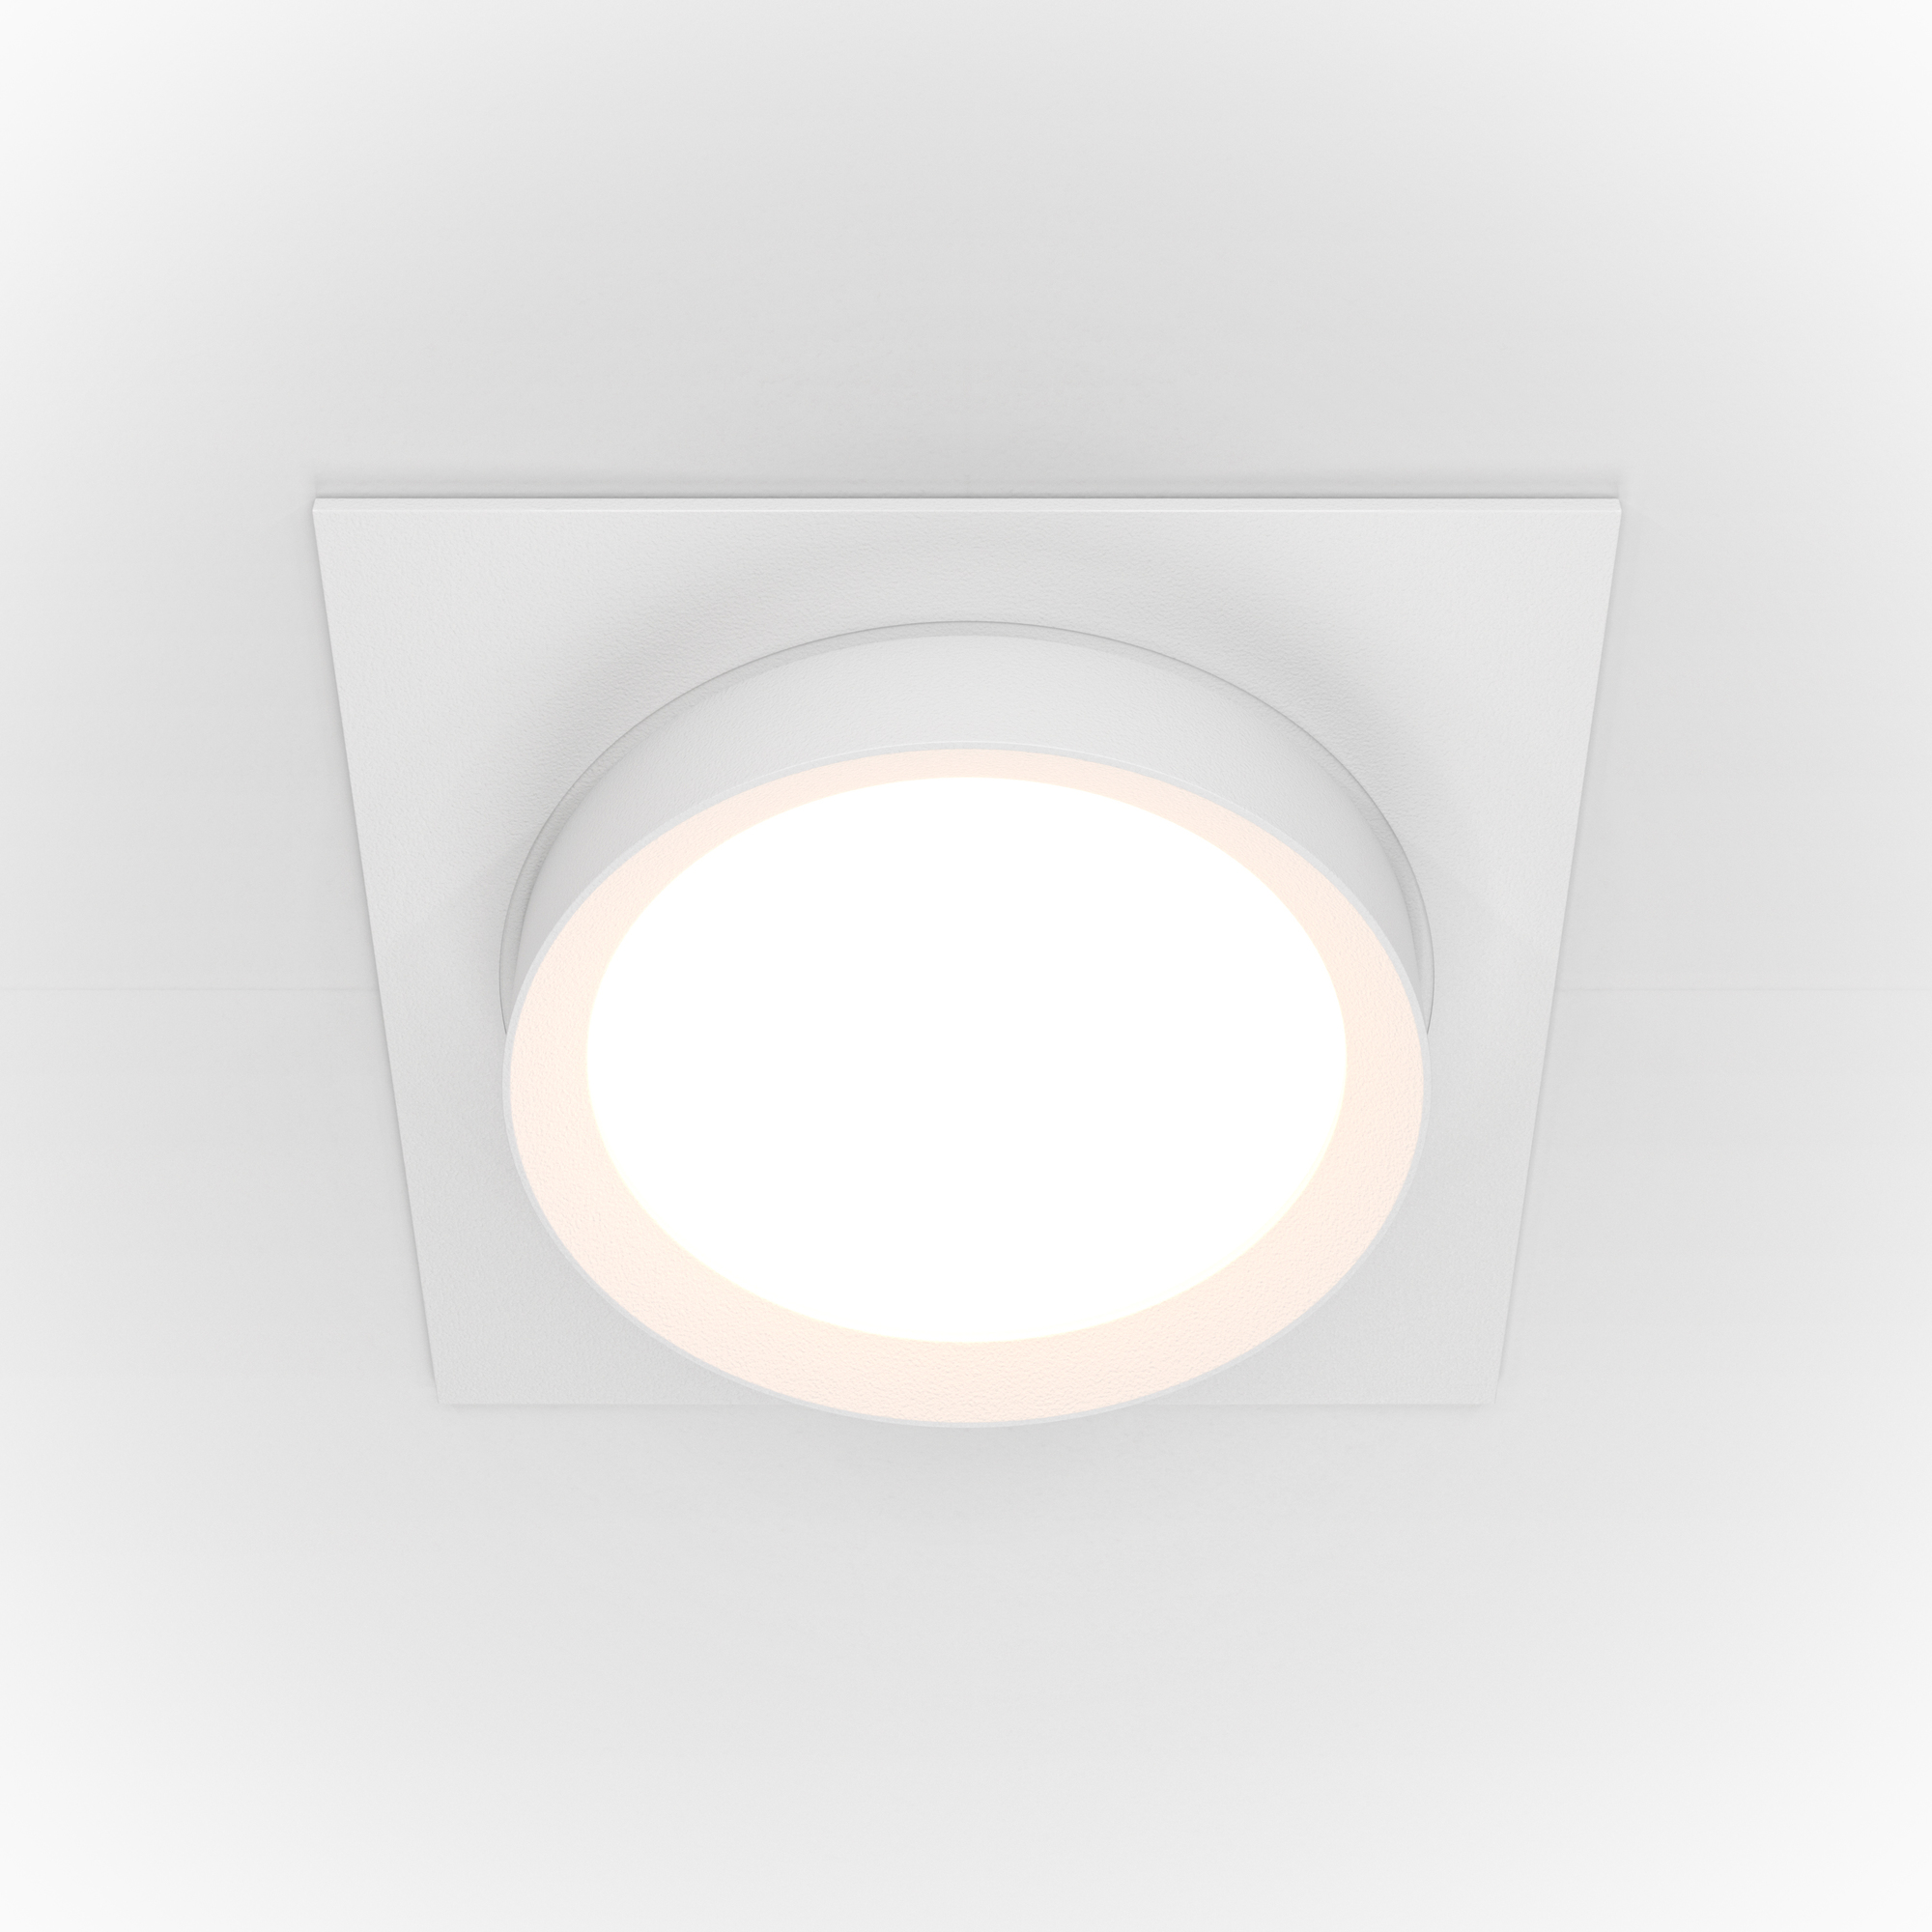 Встраиваемый светильник Technical DL086-GX53-SQ-W